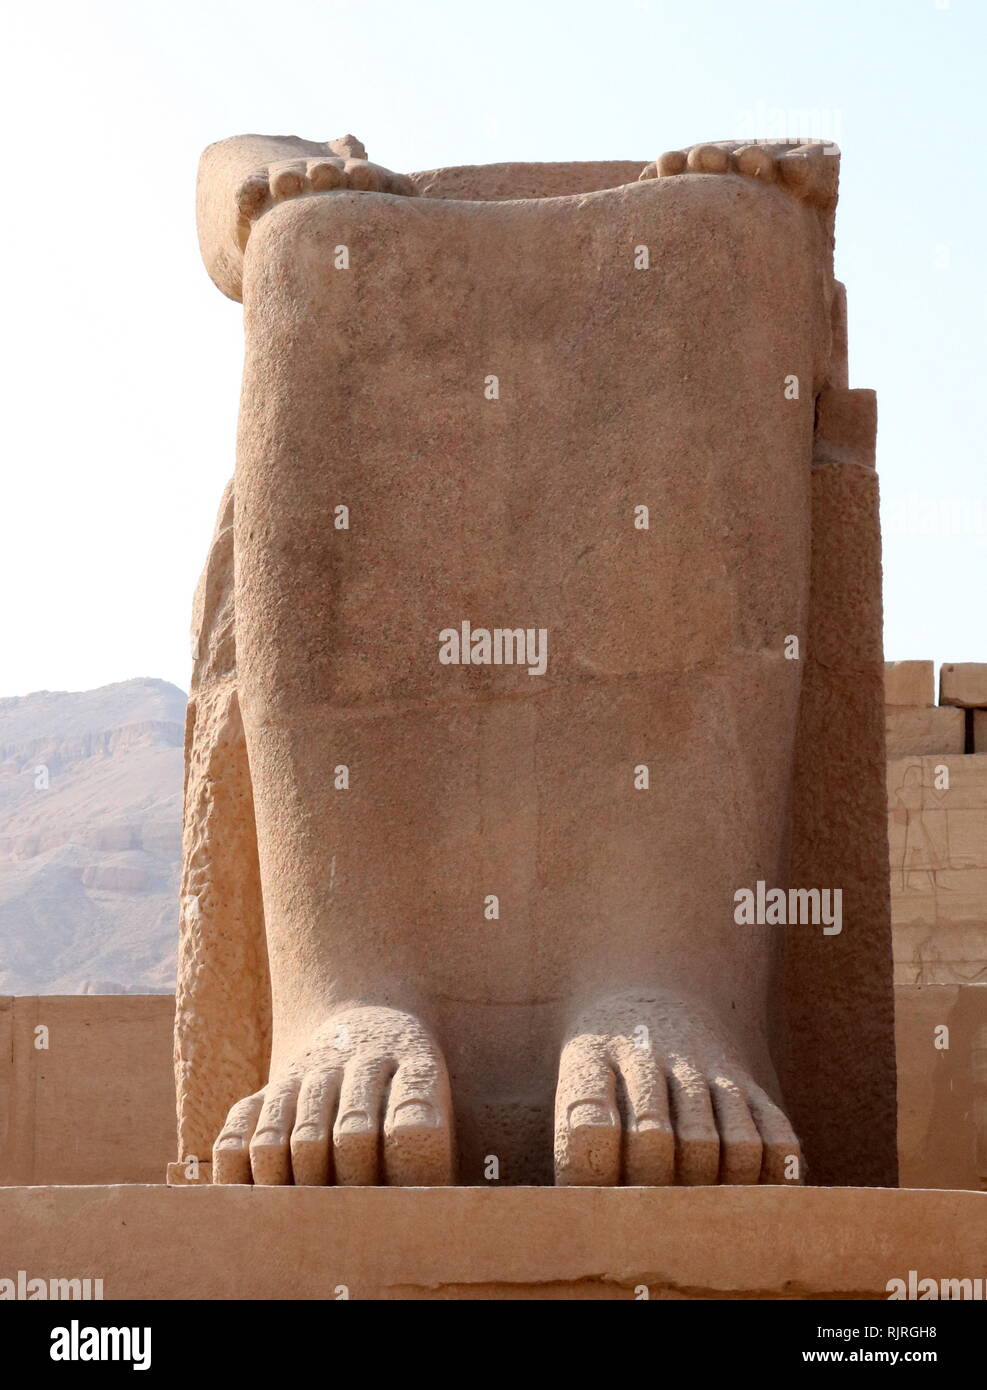 Die ramasseum Memorial Tempel (oder totentempel) von Pharao Ramses II (C. 1303 v. Chr. - 1213 v. Chr.). in der Thebanischen Nekropole im oberen Ägypten gelegen, gegenüber den Nil von der modernen Stadt Luxor. Stockfoto